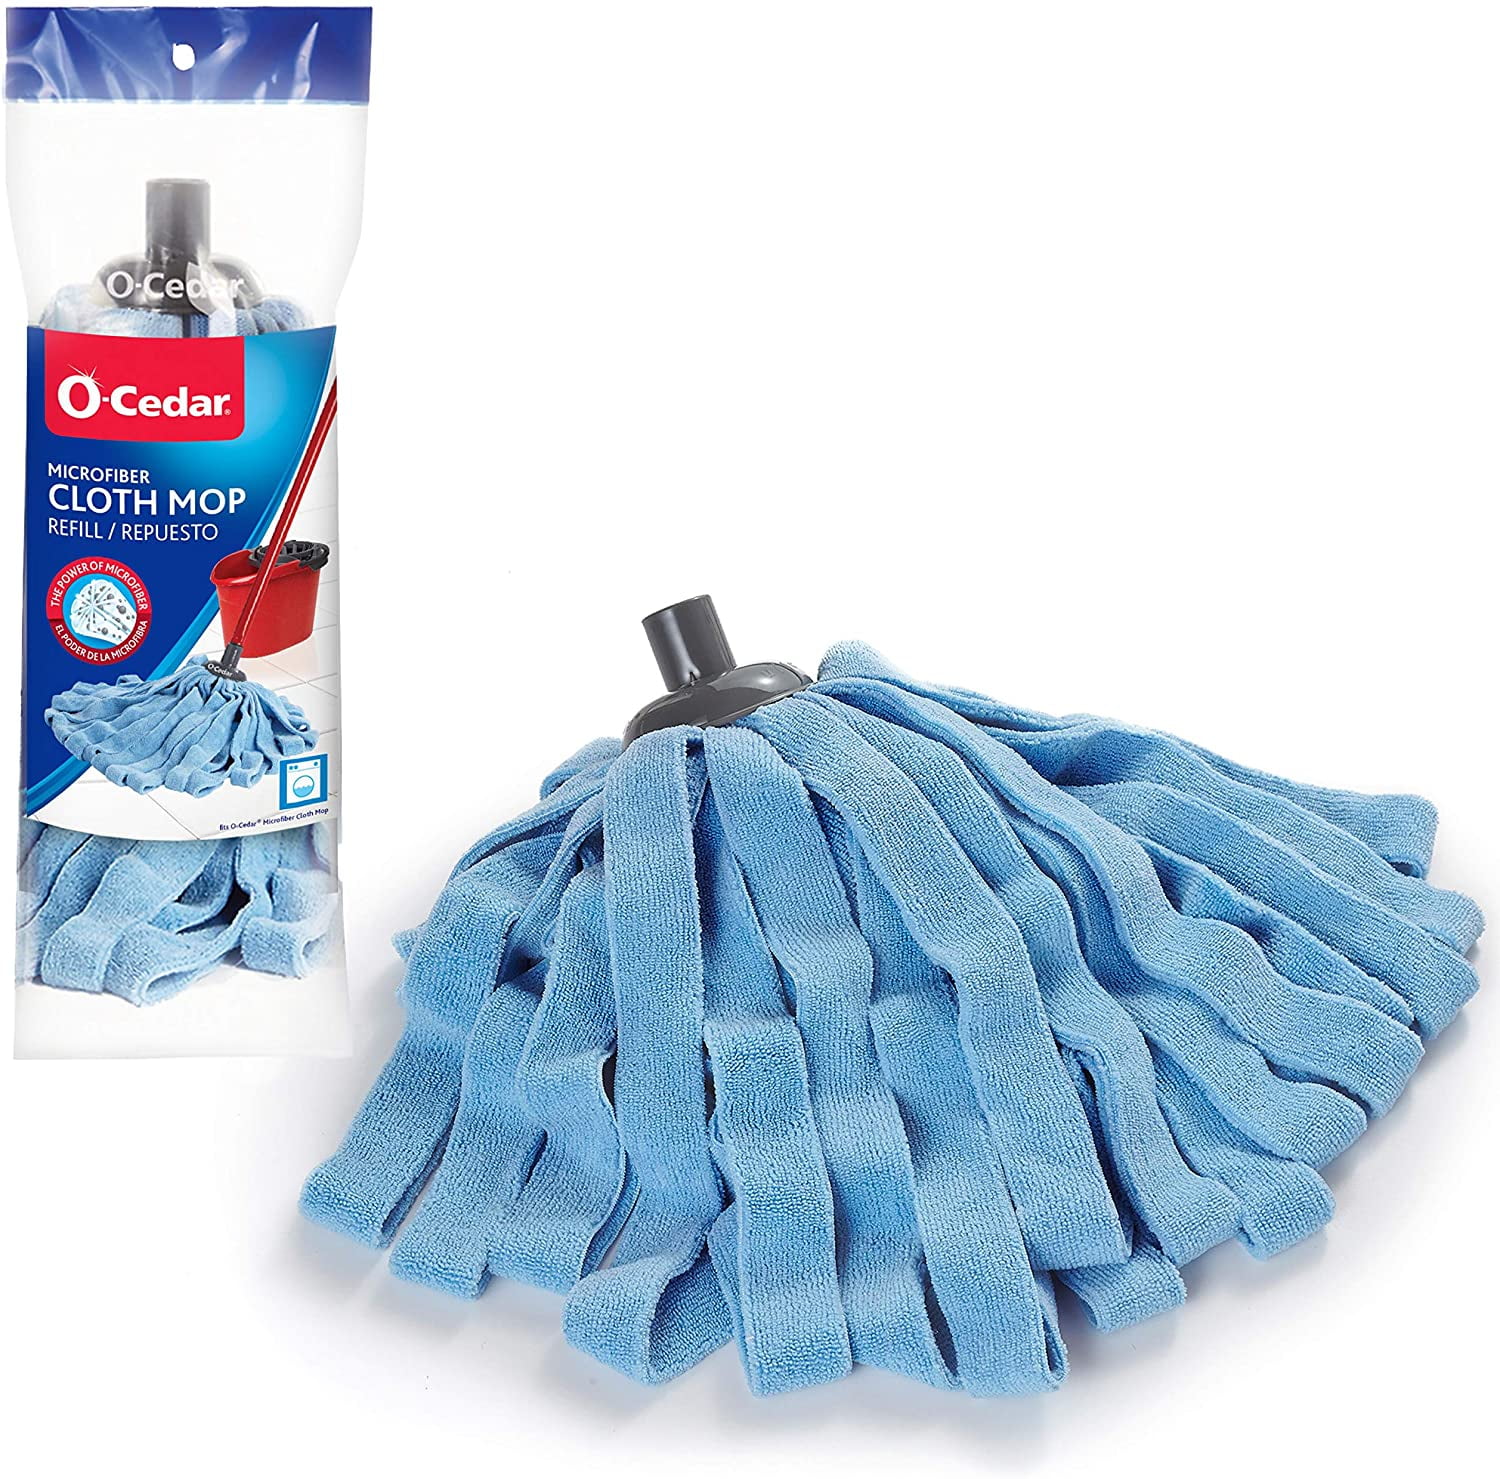 O-Cedar Microfiber Cloth Mop Refill - Shop Mops at H-E-B